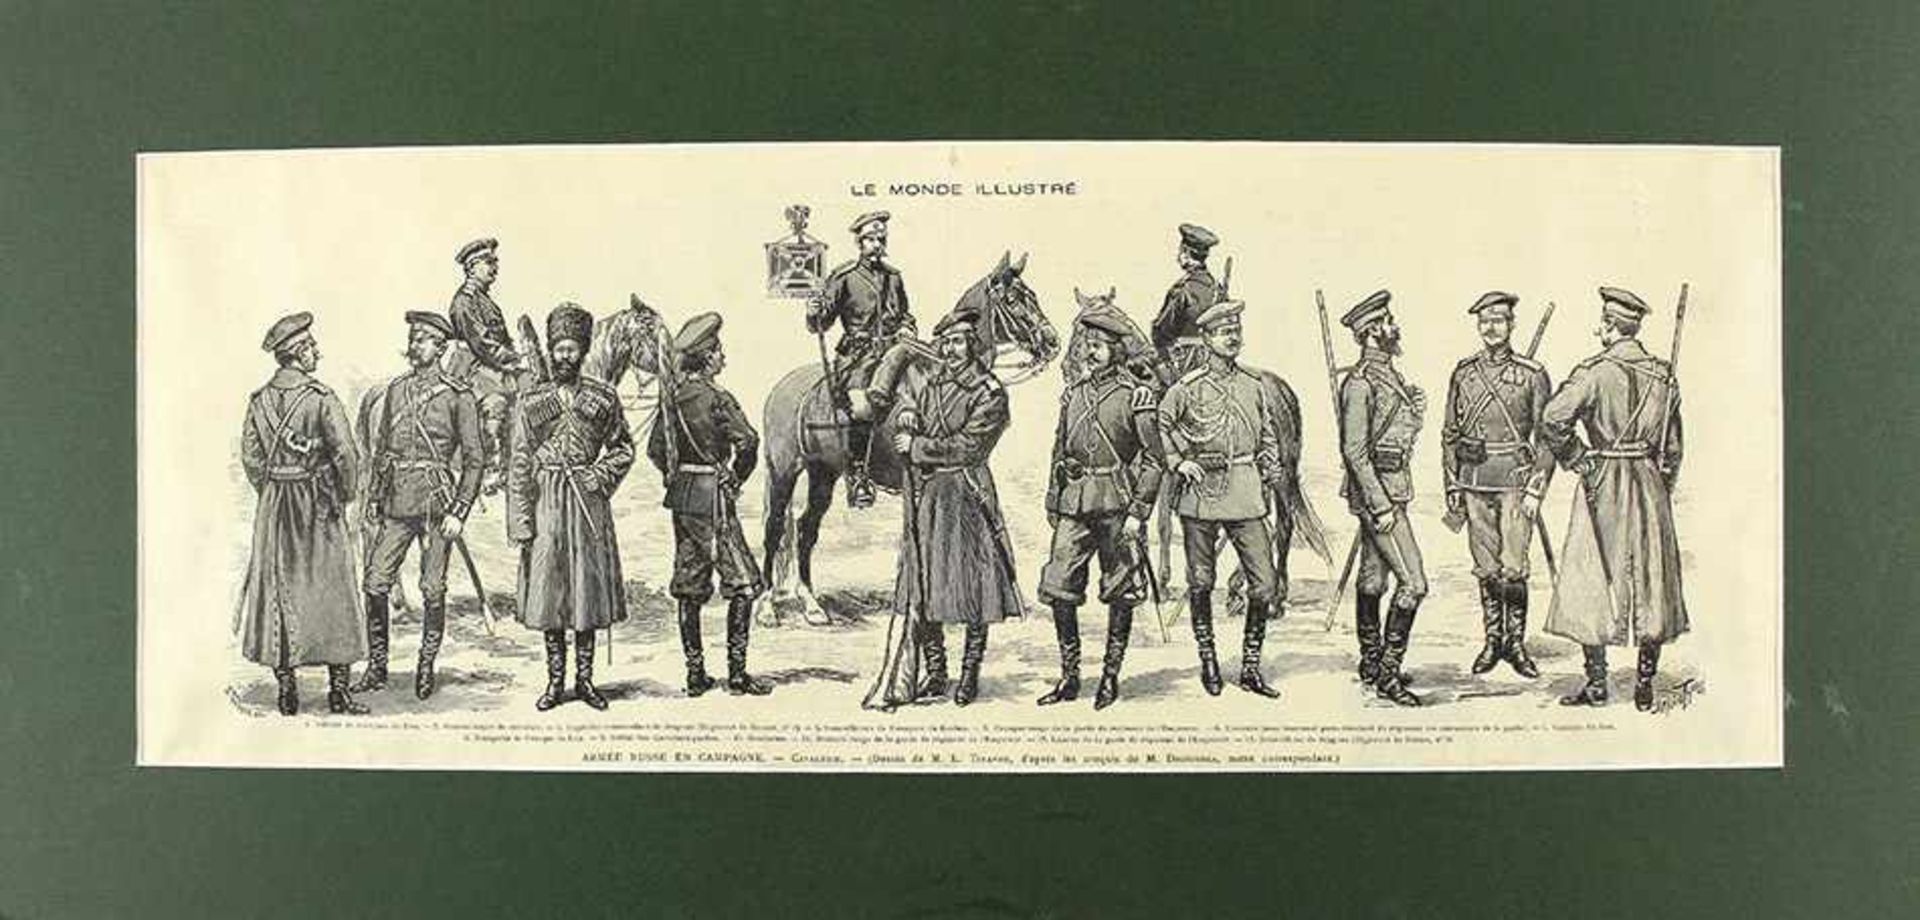 Louis Tinayre. Uniform der Kavallerie der Russischen Armee (Seite einer Ausgabe "Le Monde